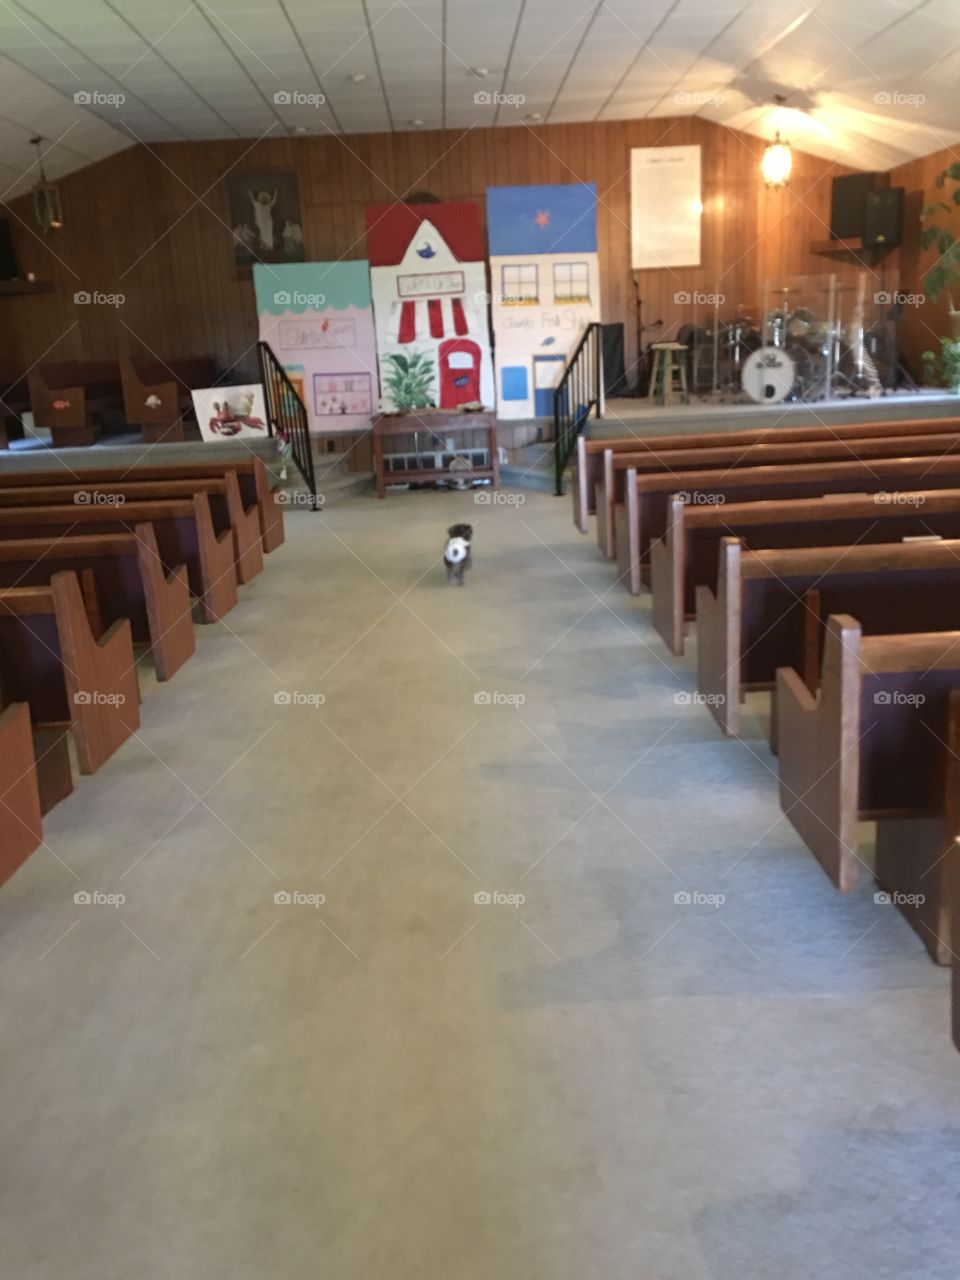 Fugi in church